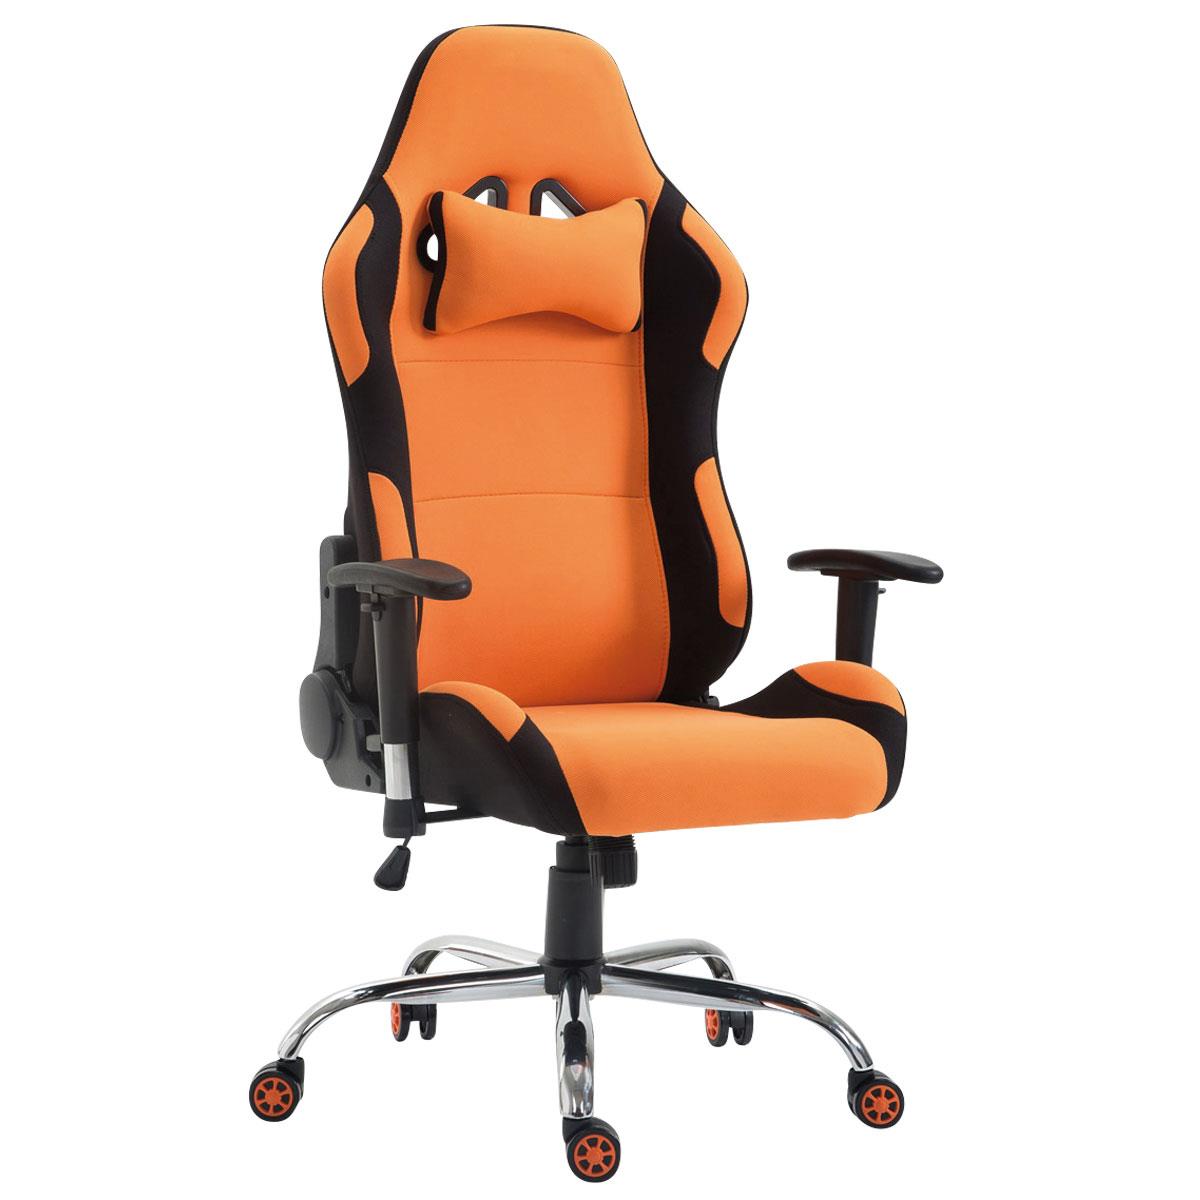 Cadeira Gaming ROSBY PANO, Design Desportivo e Muito Confortável, Cor Laranja